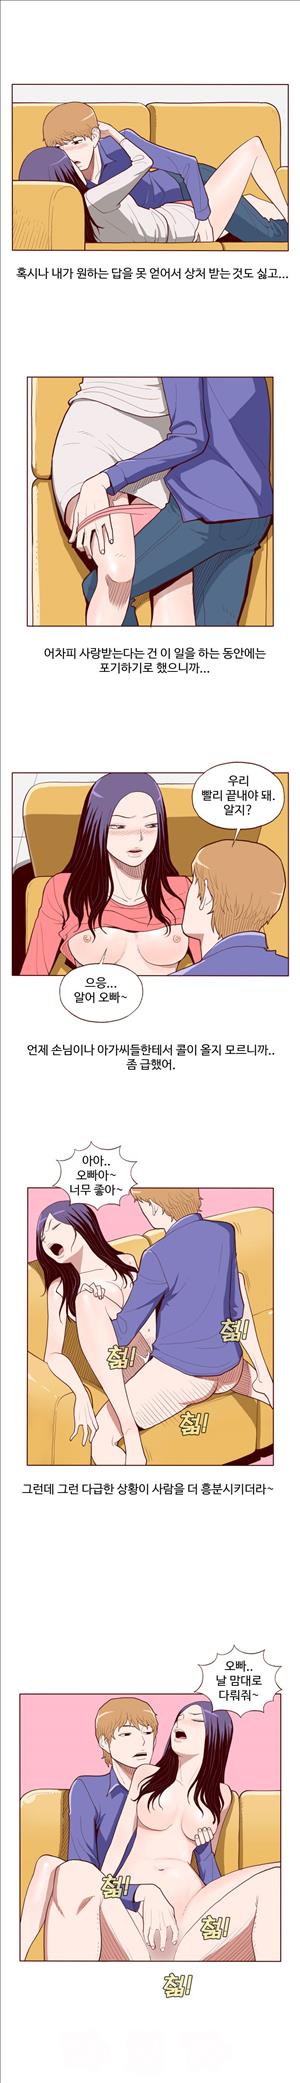 미색 - 썰만화 시즌4 52화 - 오피녀의 비밀(하)_4